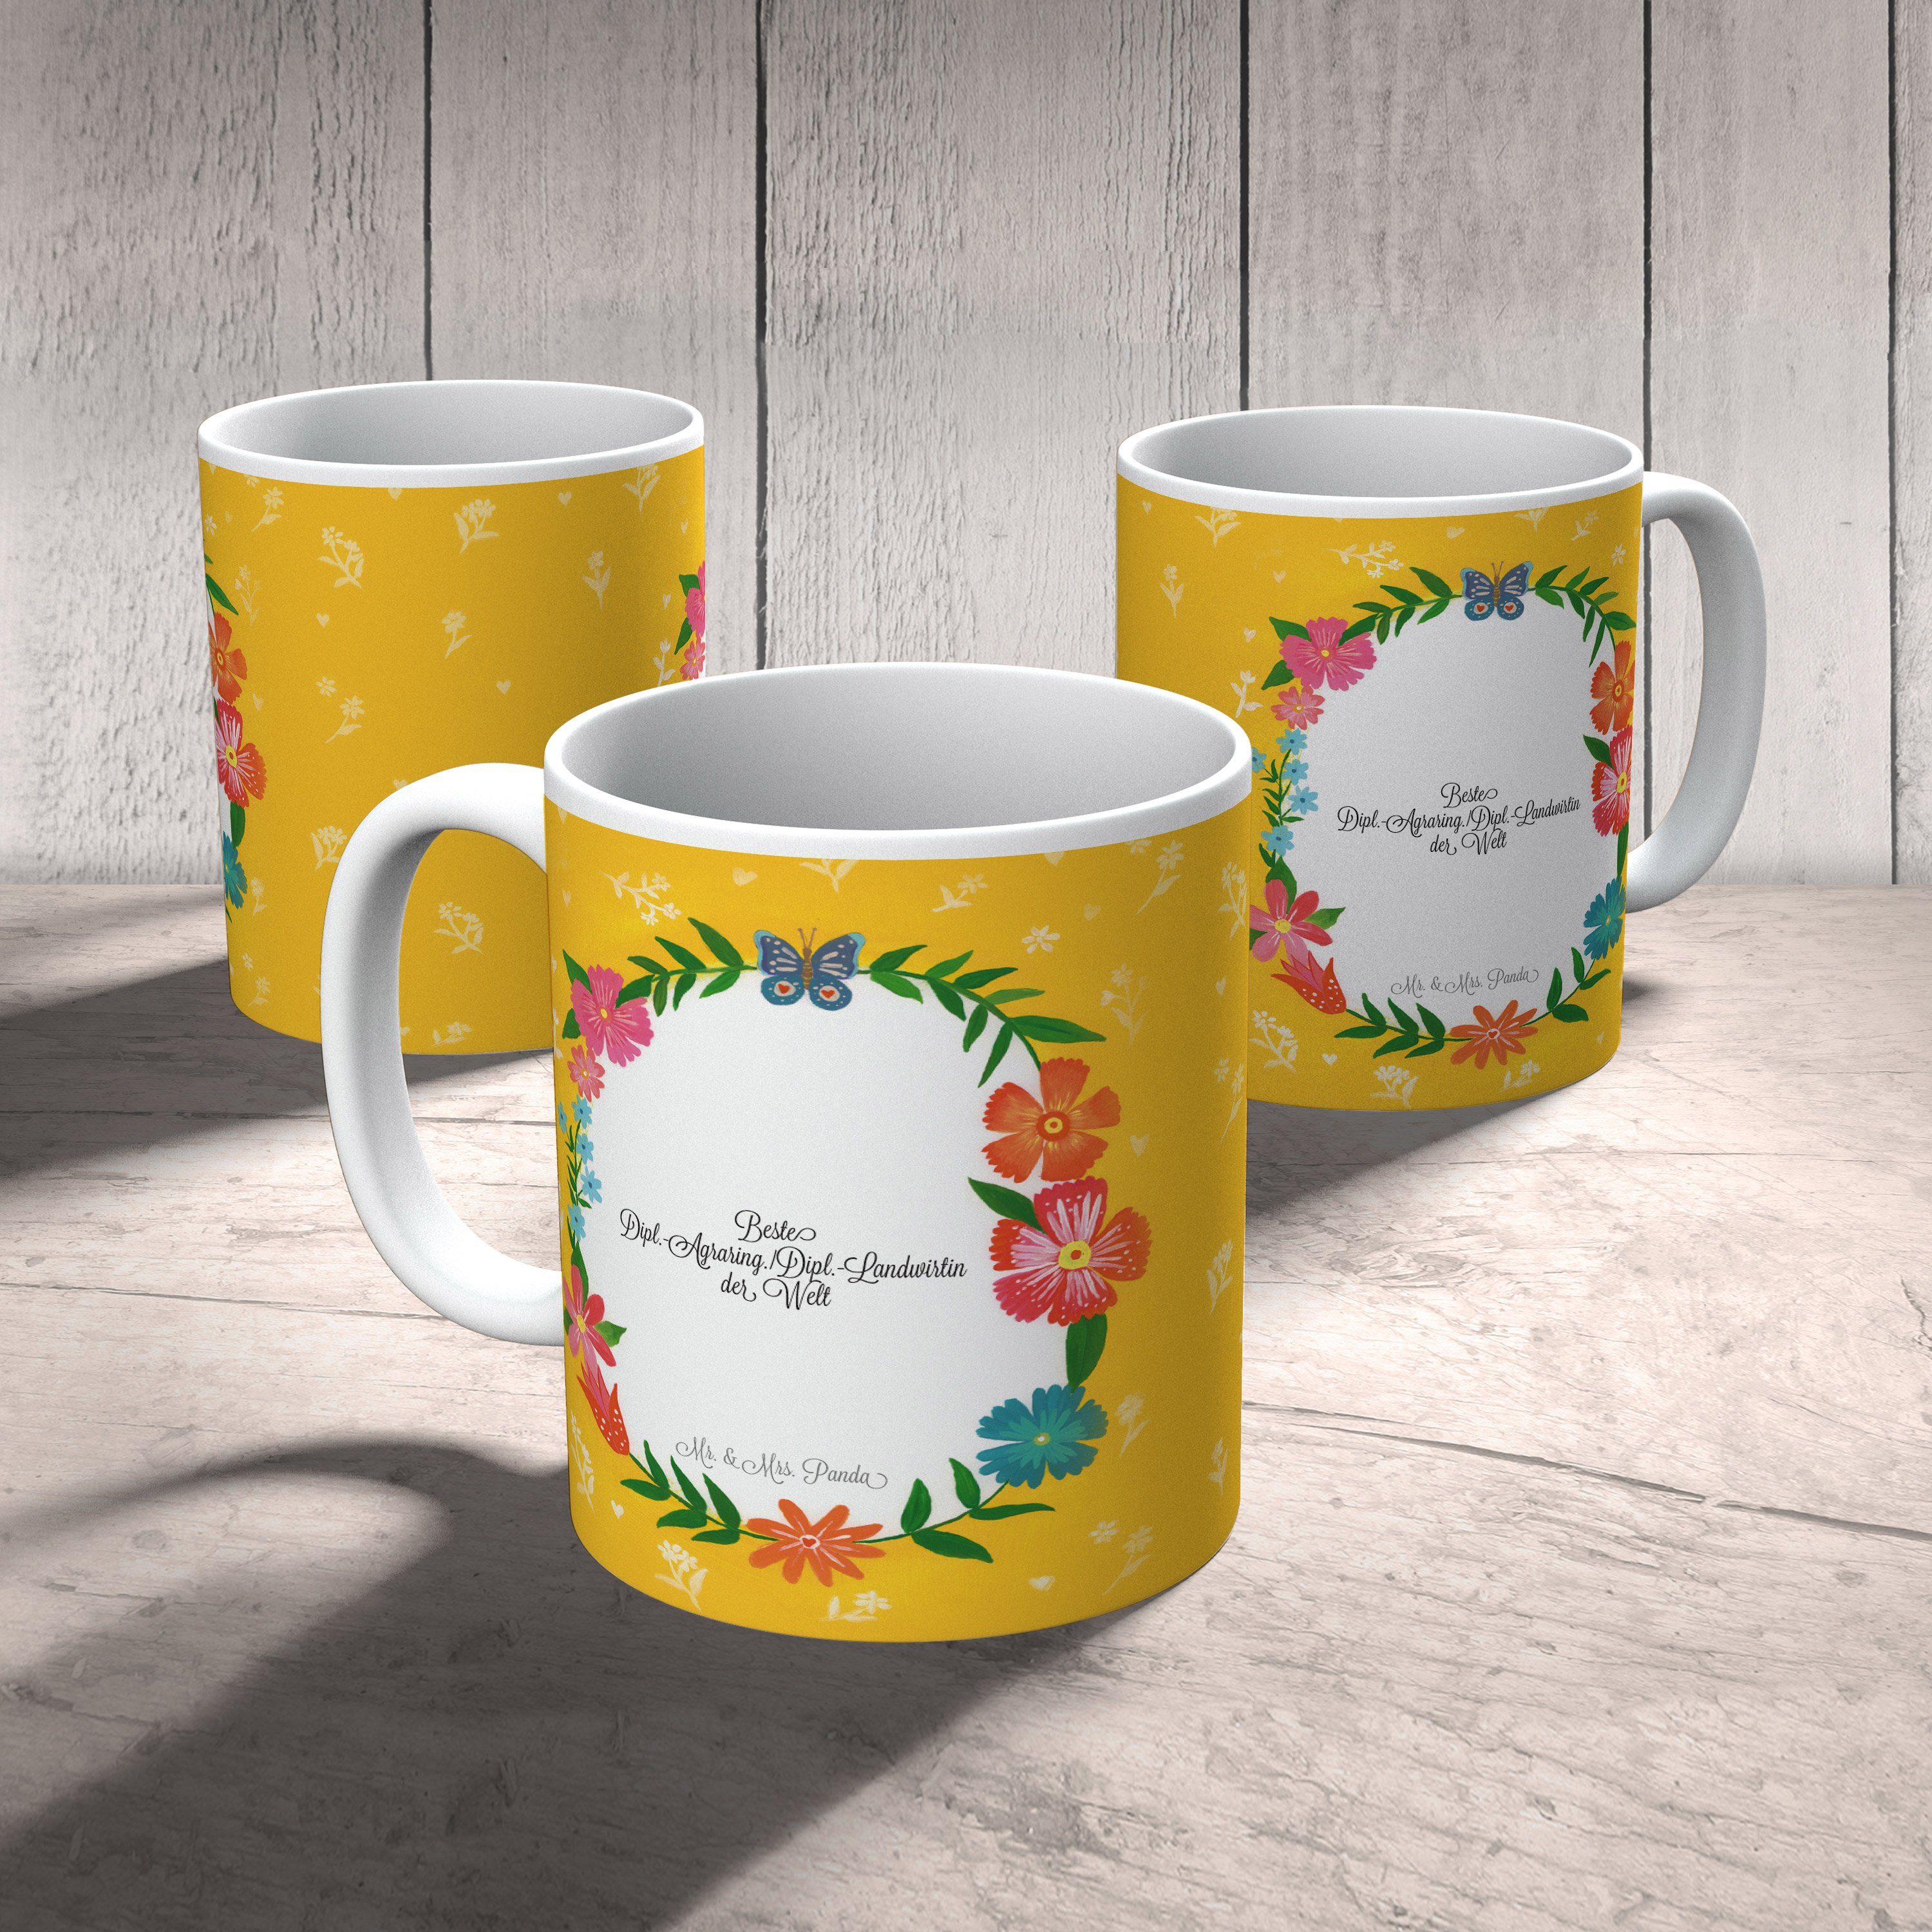 Kaffeetasse, Gratulation, Keramik & Mr. Tasse Geschenk, - Dipl.-Agraring./Dipl.-Landwirtin Mrs. Panda